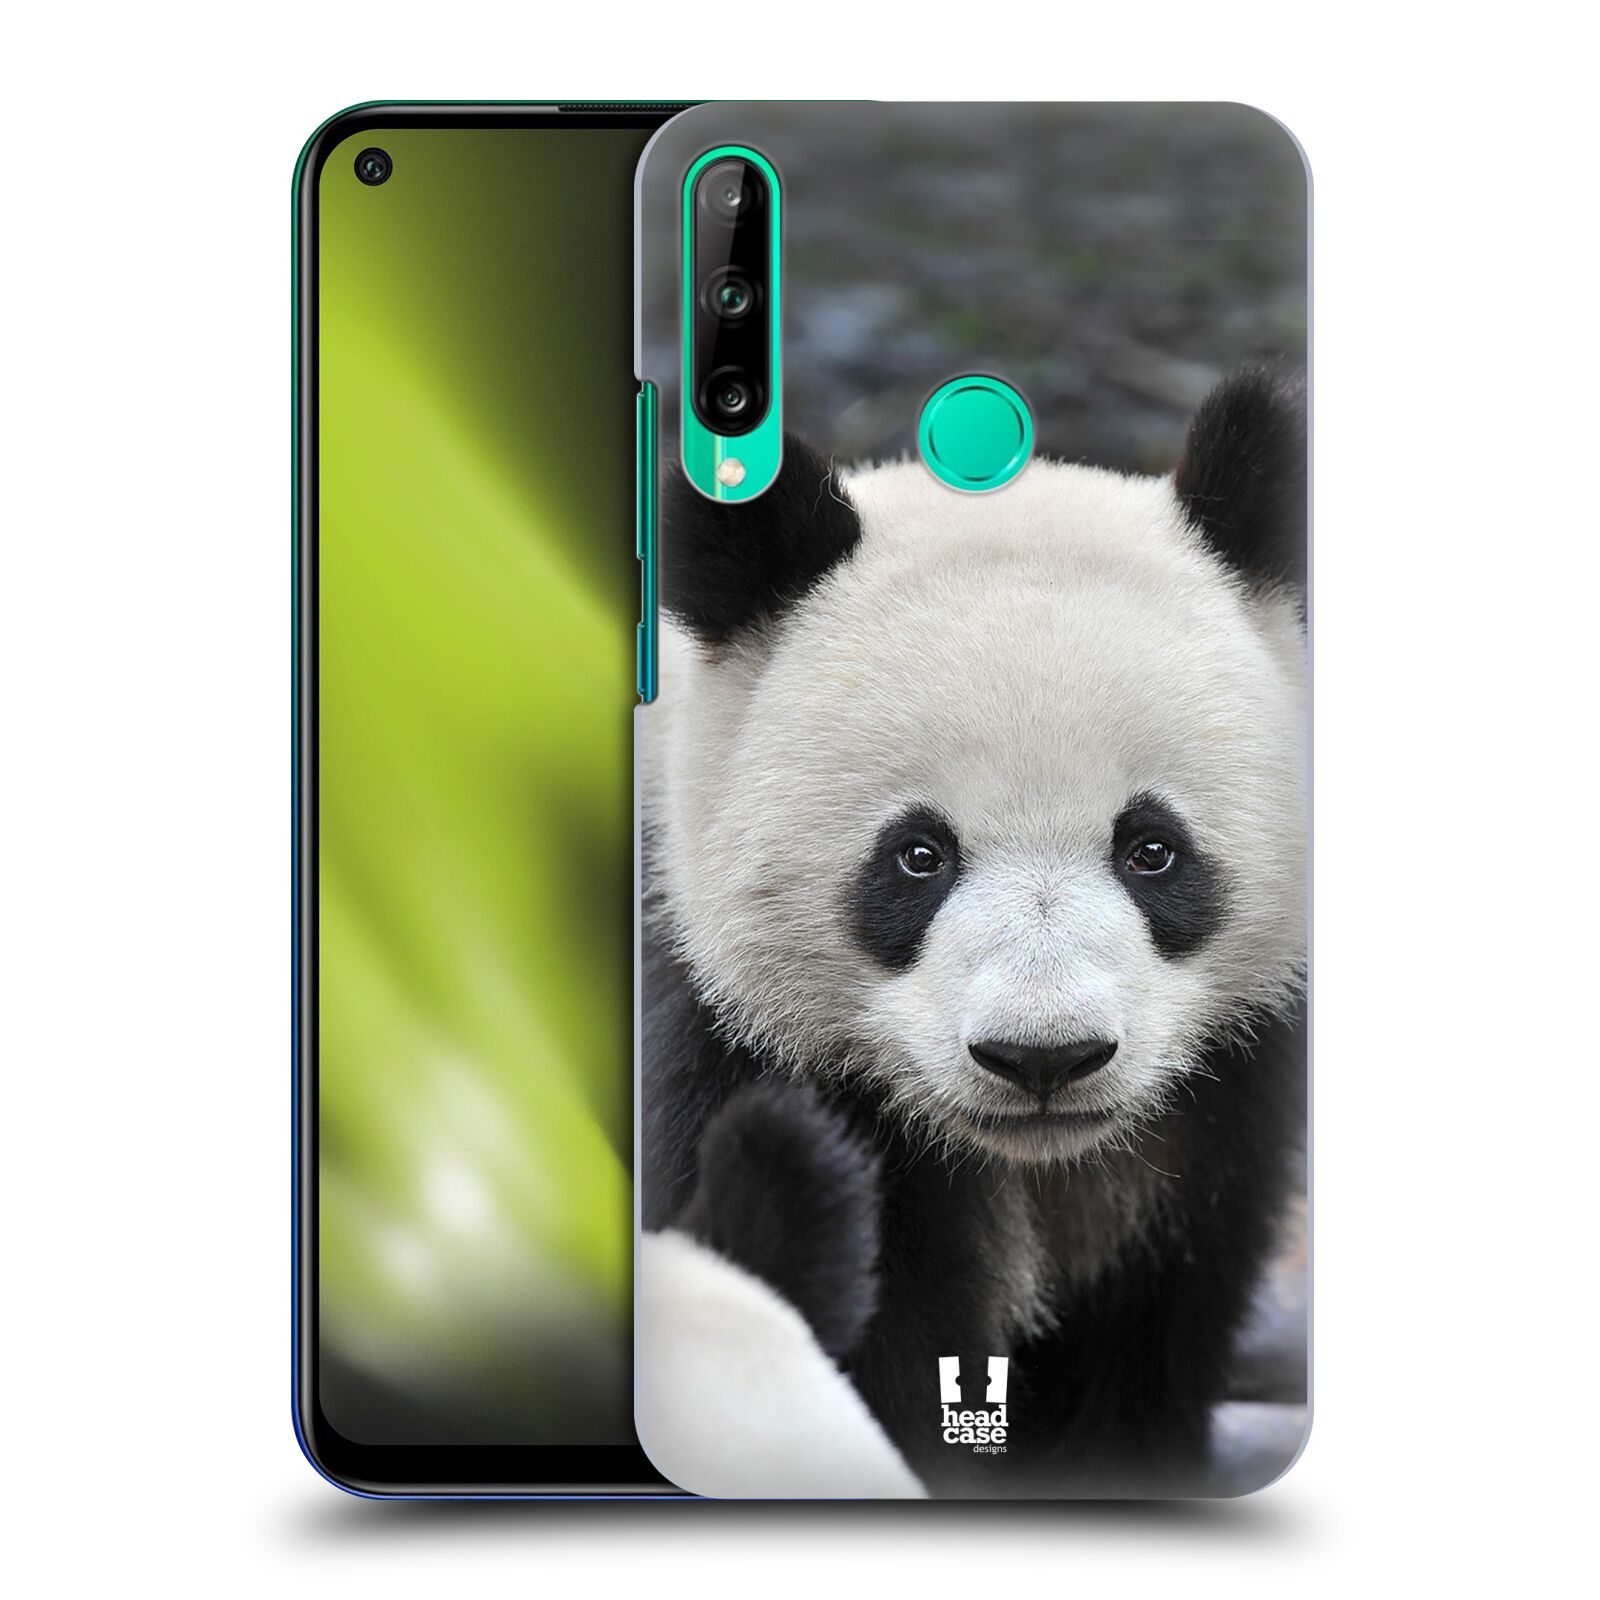 Zadní obal pro mobil Huawei P40 Lite E - HEAD CASE - Svět zvířat medvěd panda